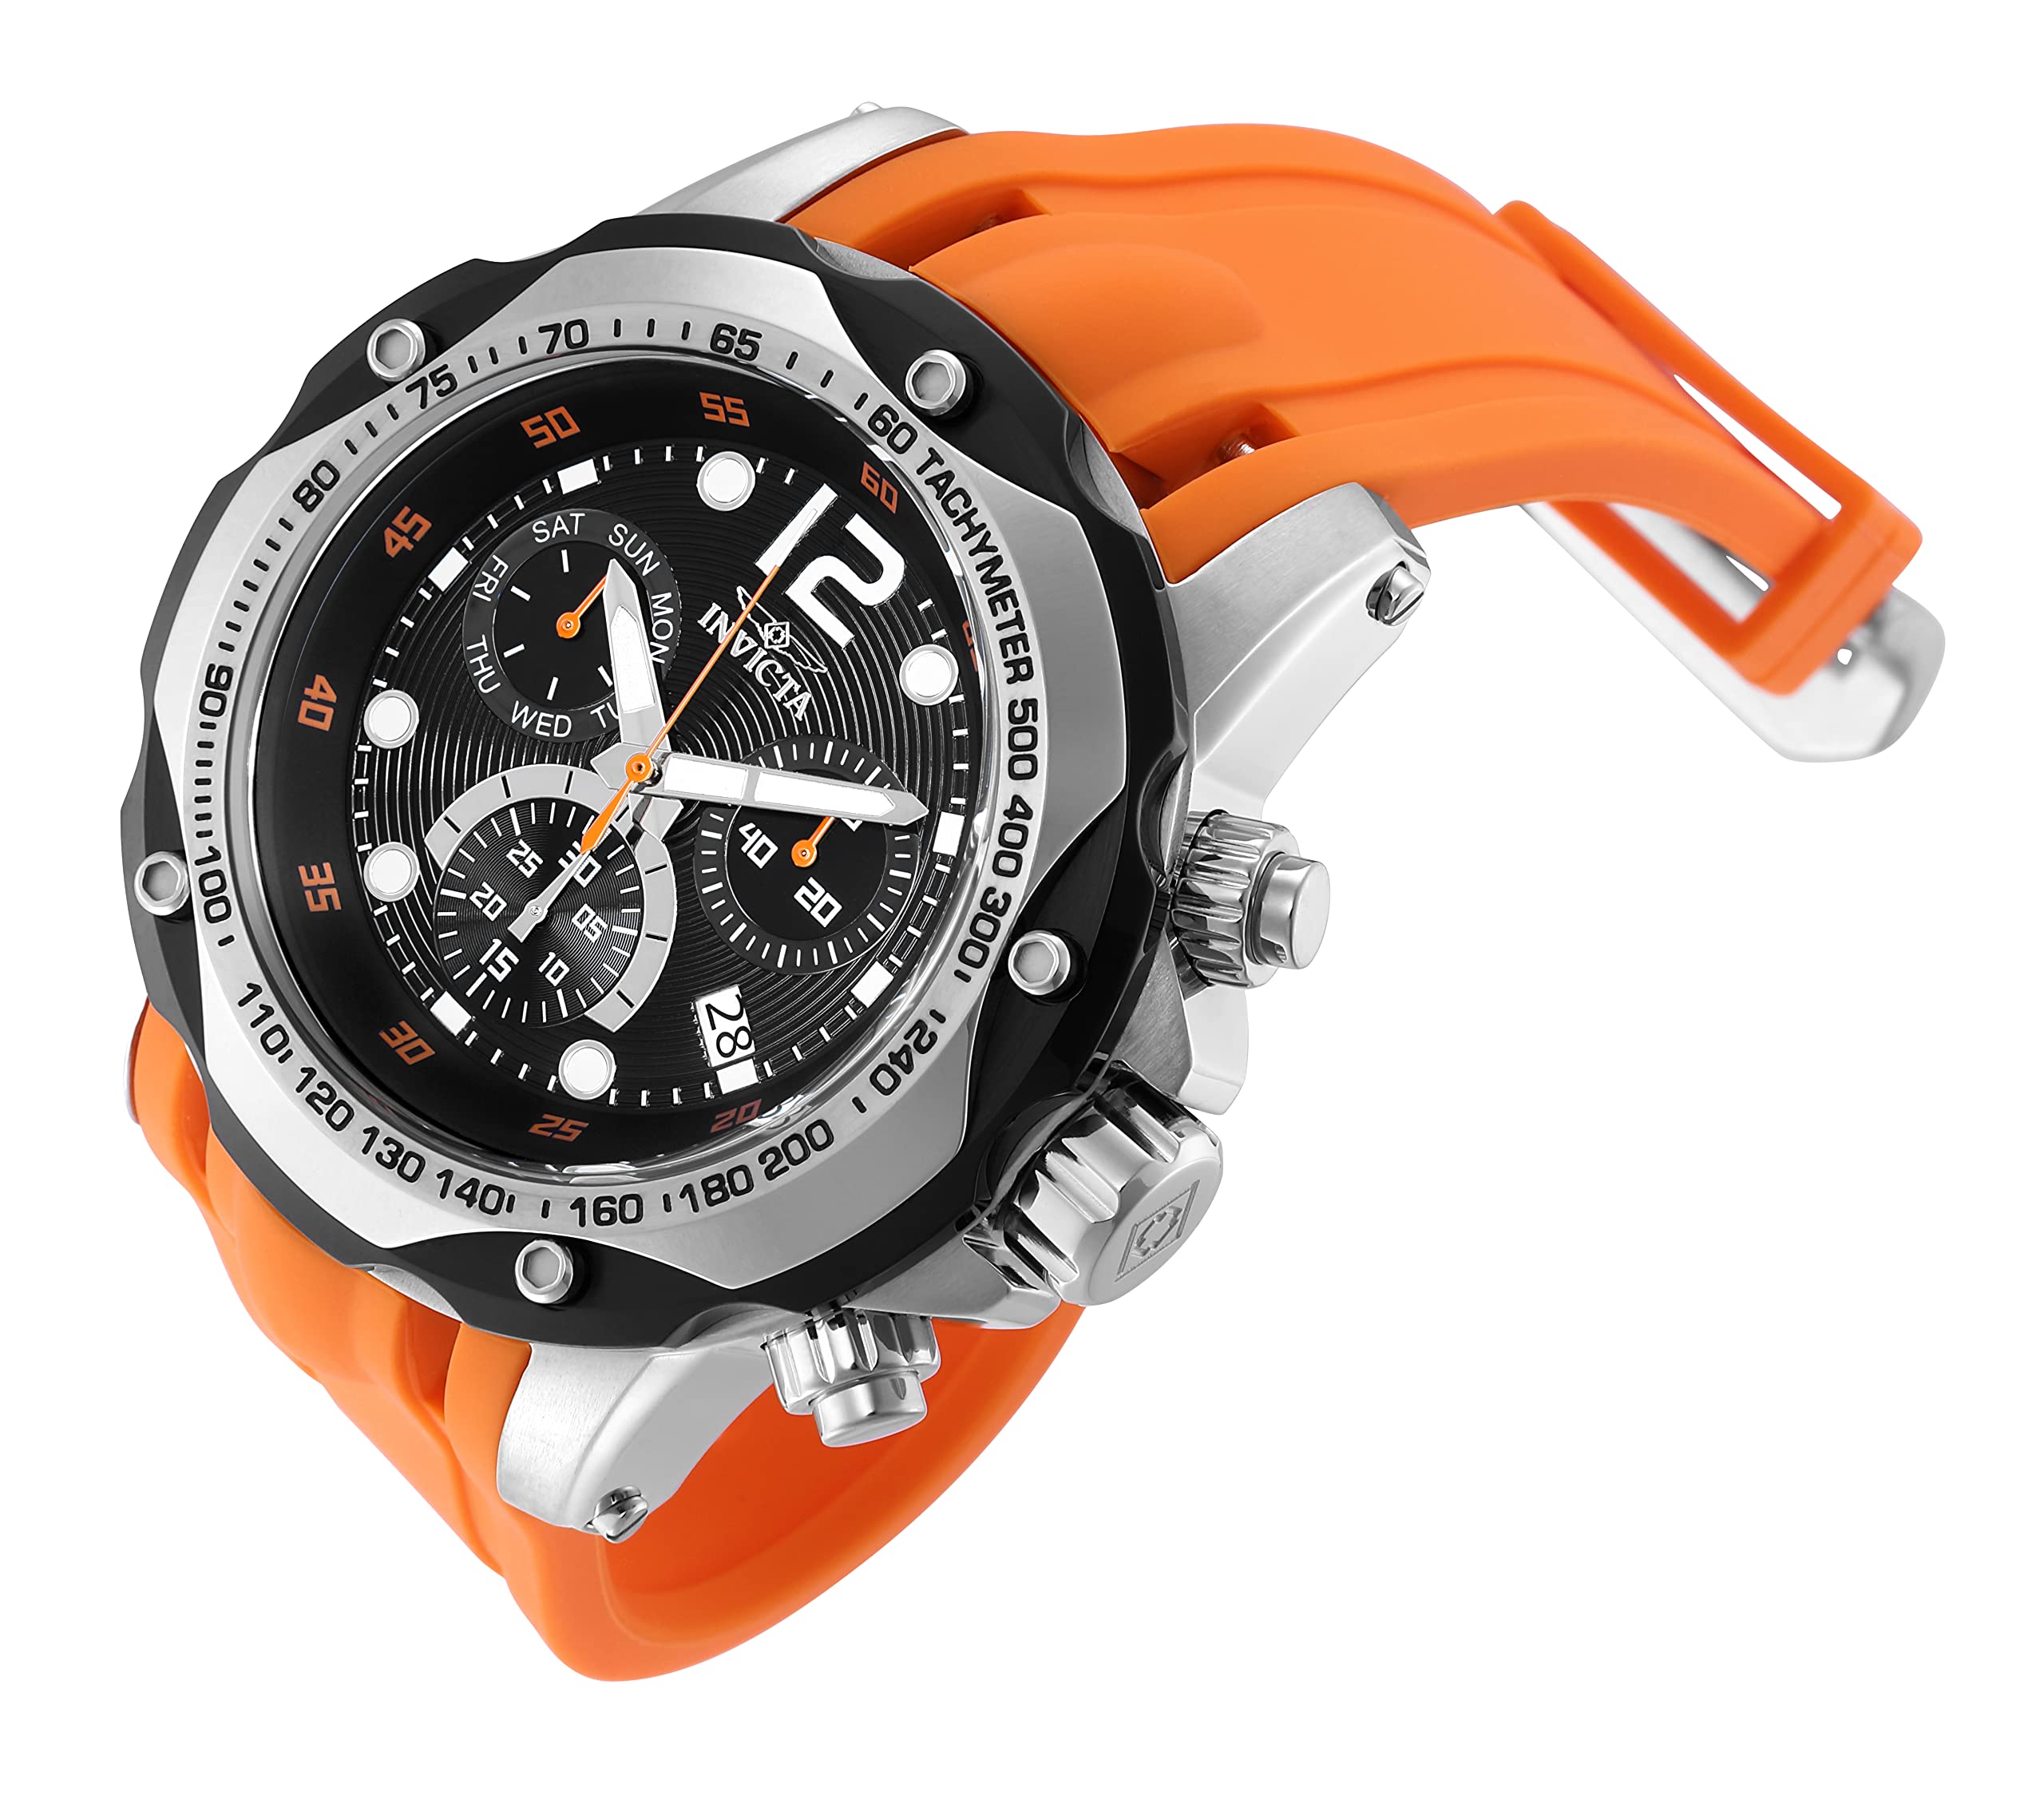 Invicta Men's 20072 Speedway Analog Display Swiss Quartz Orange Watch